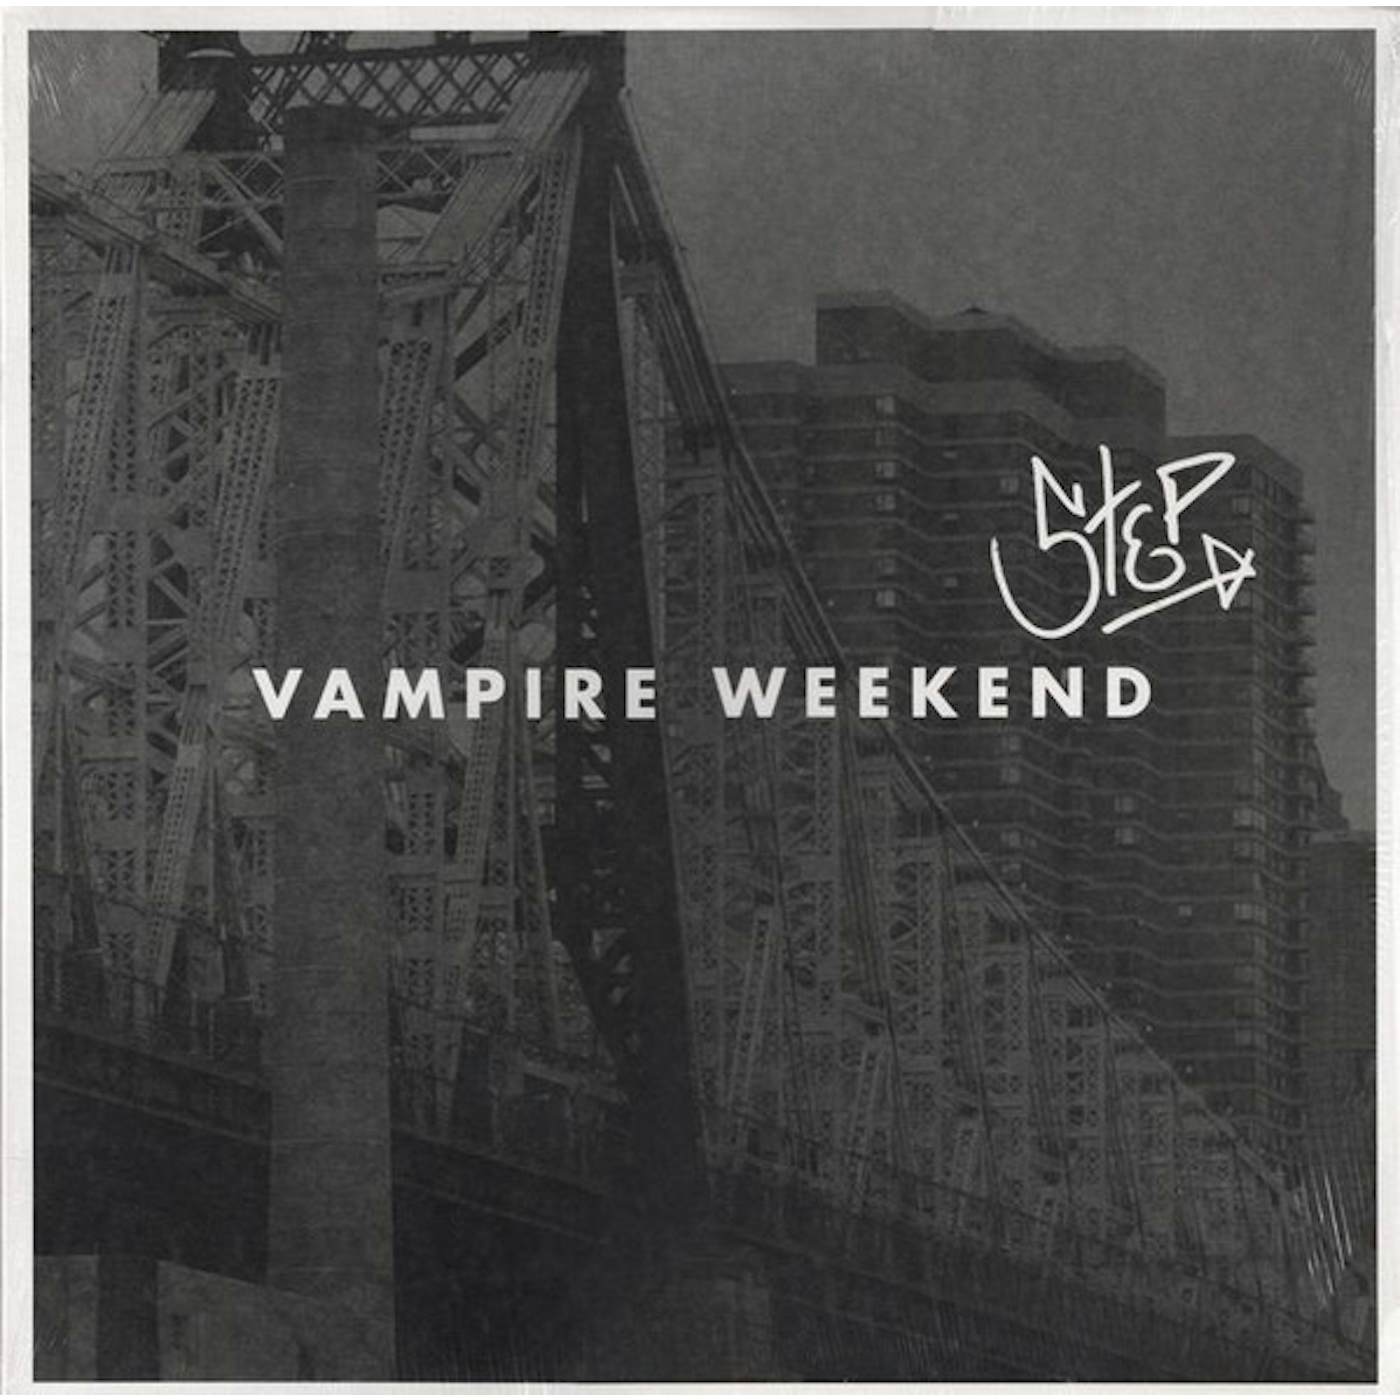 Vampire Weekend Step Vinyl Record